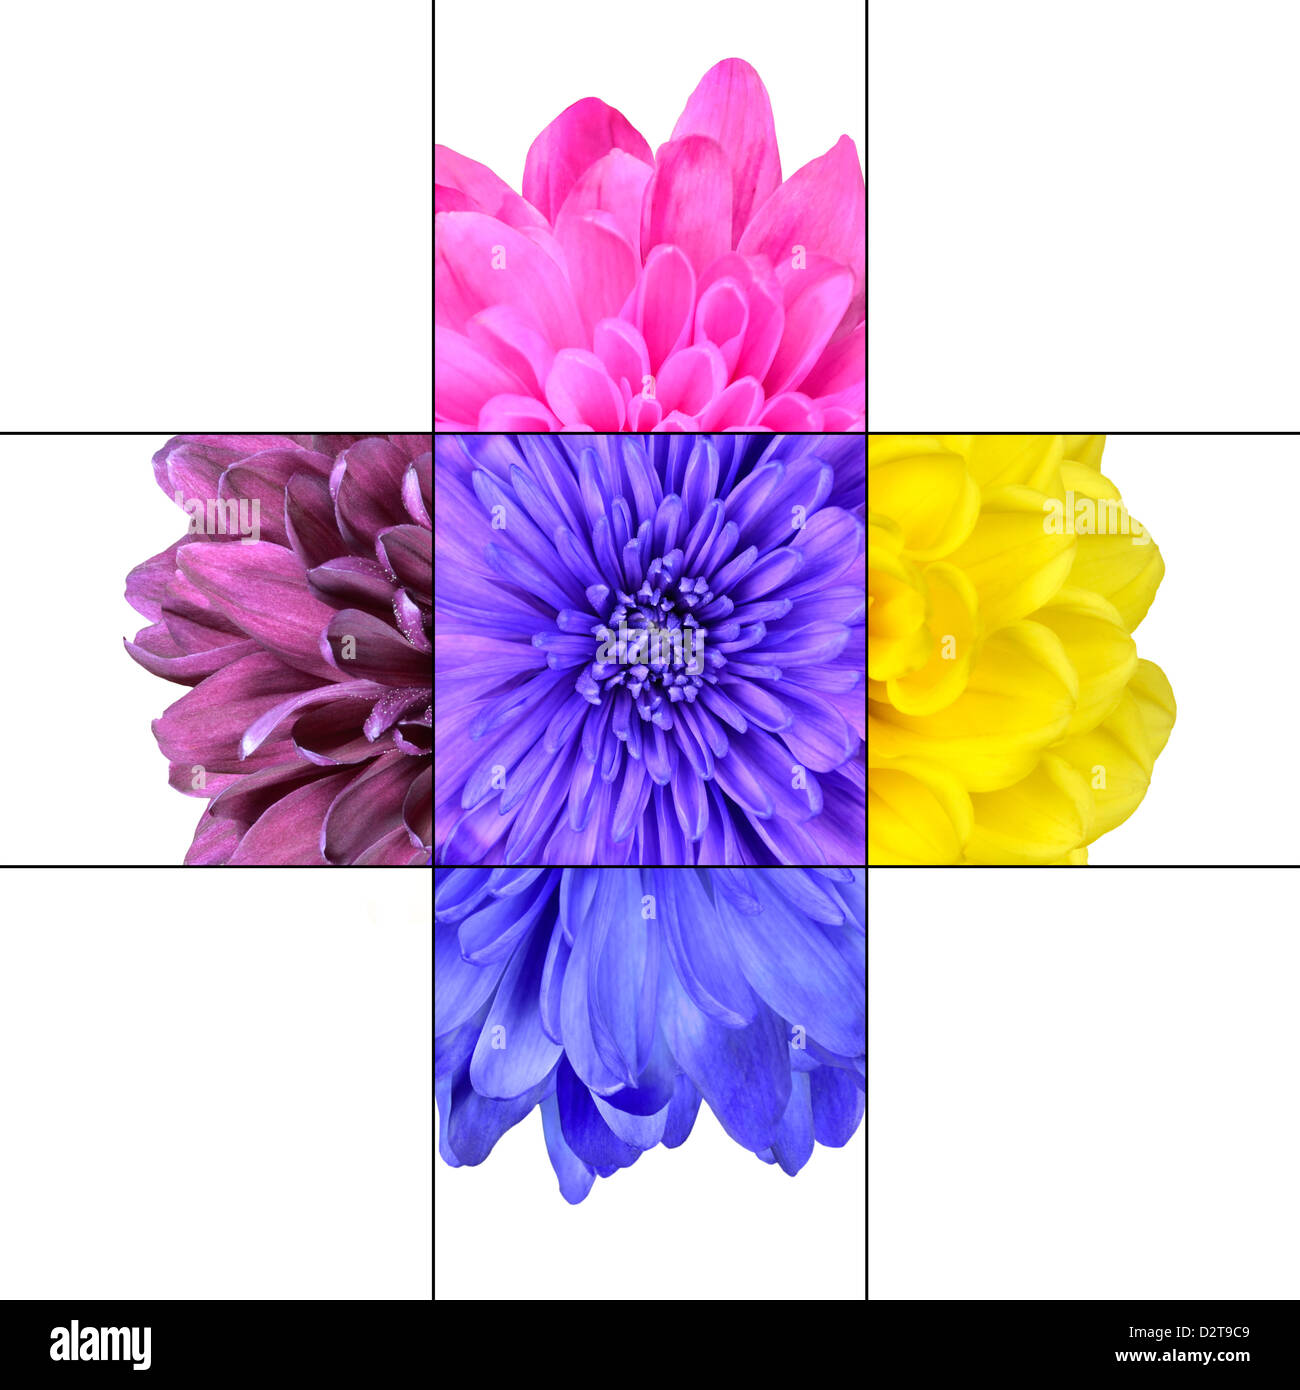 Bunte Chrysanthemenblüte Mosaikdesign, das aus 9 Quadraten auf 3 x 3-Raster mit Teilen der Chrysanthemenblüte besteht. Stockfoto